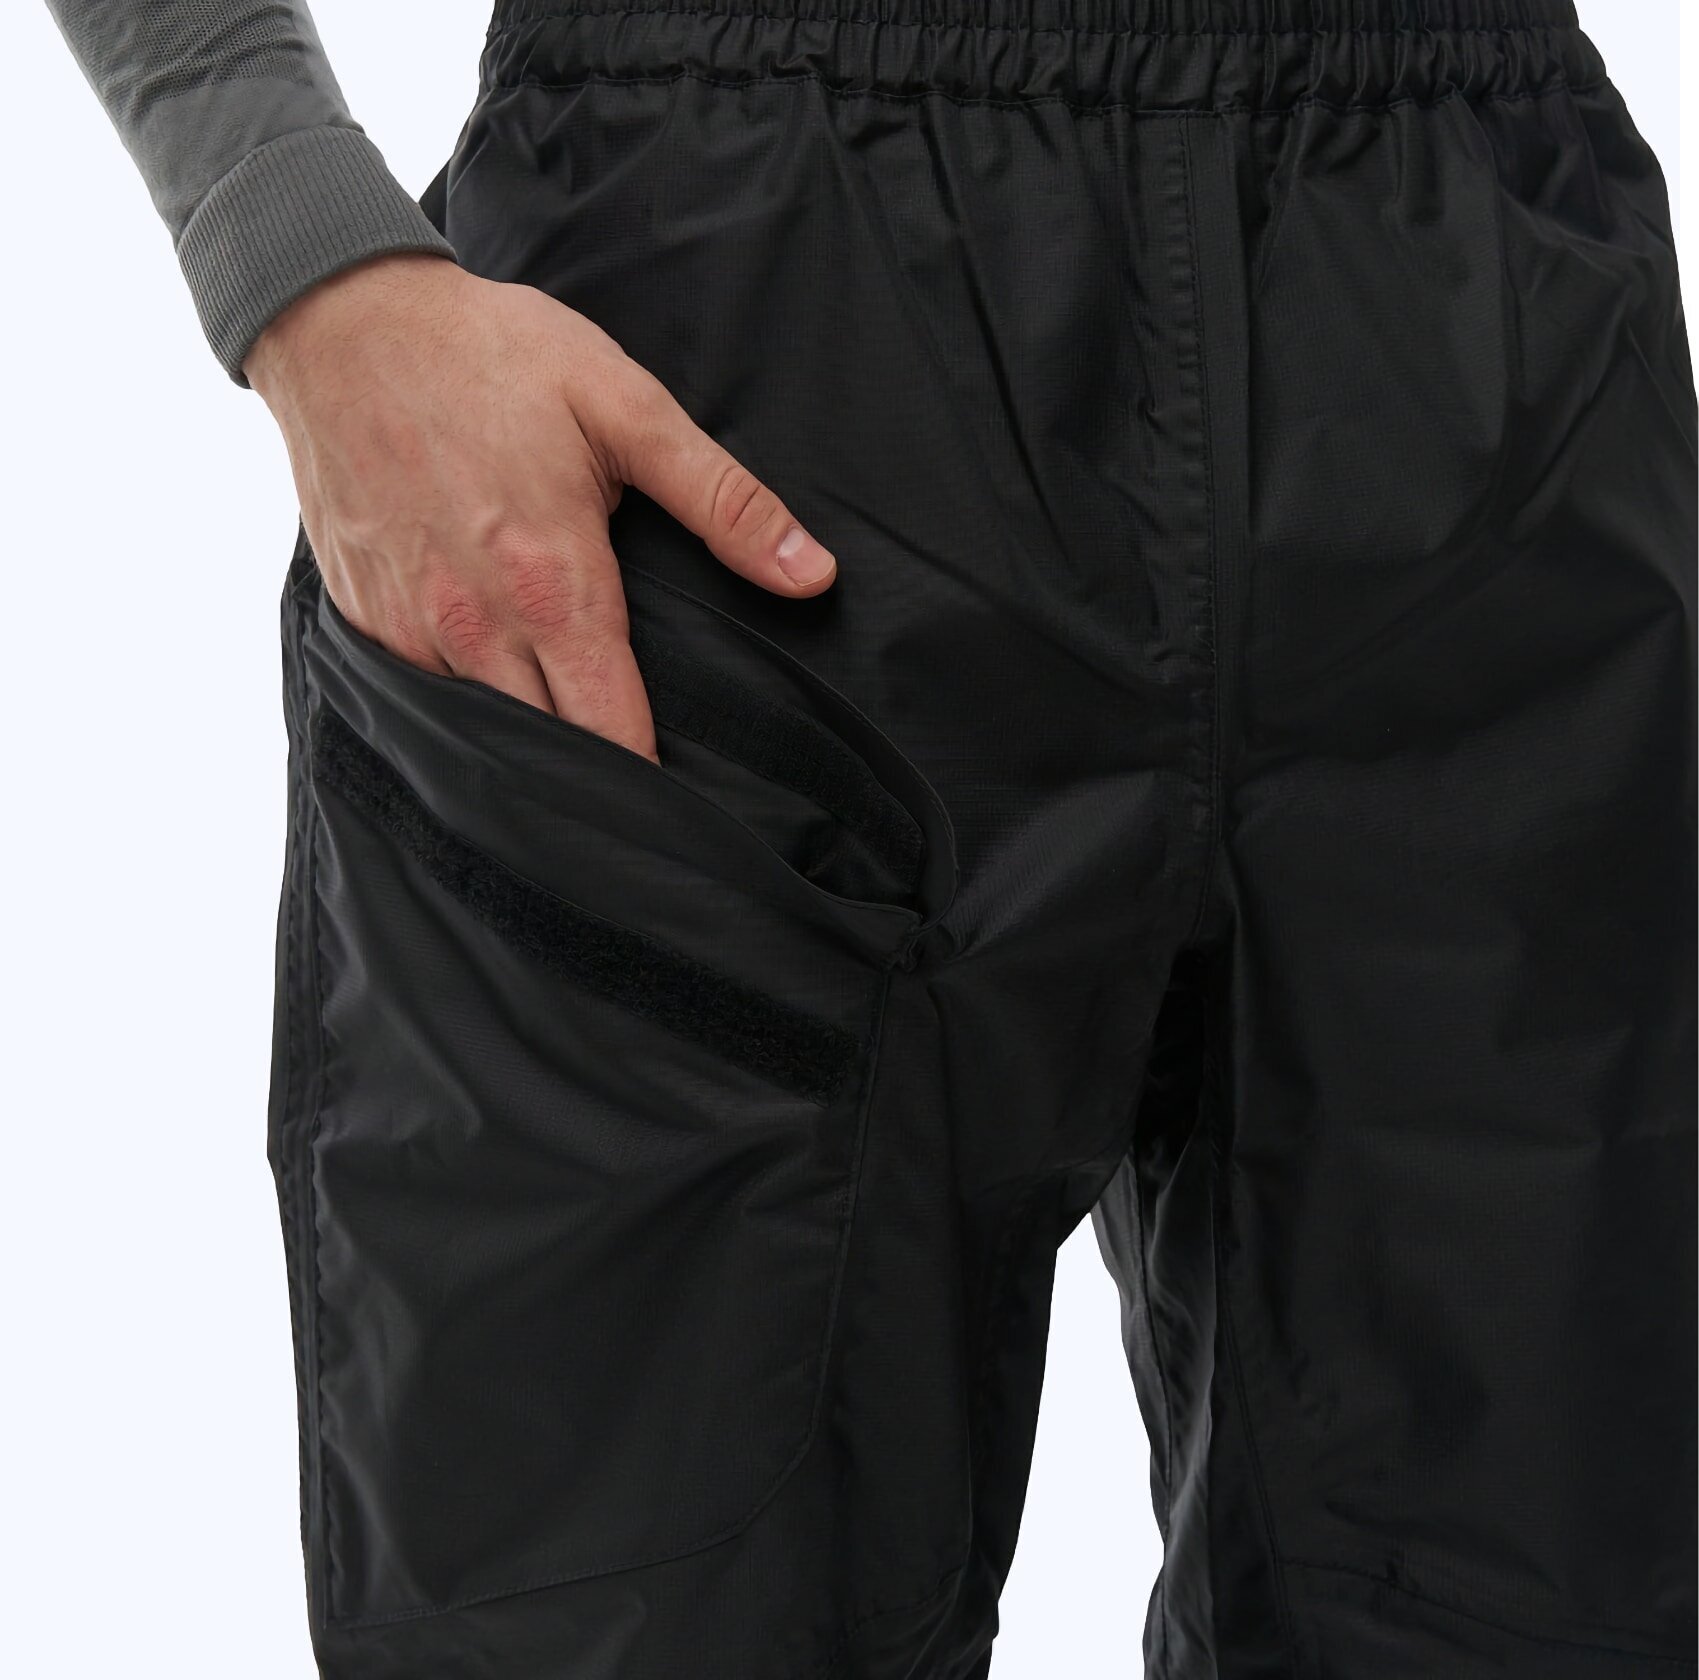 Мембранные брюки дождевик Dragonfly Evo - Черные - M